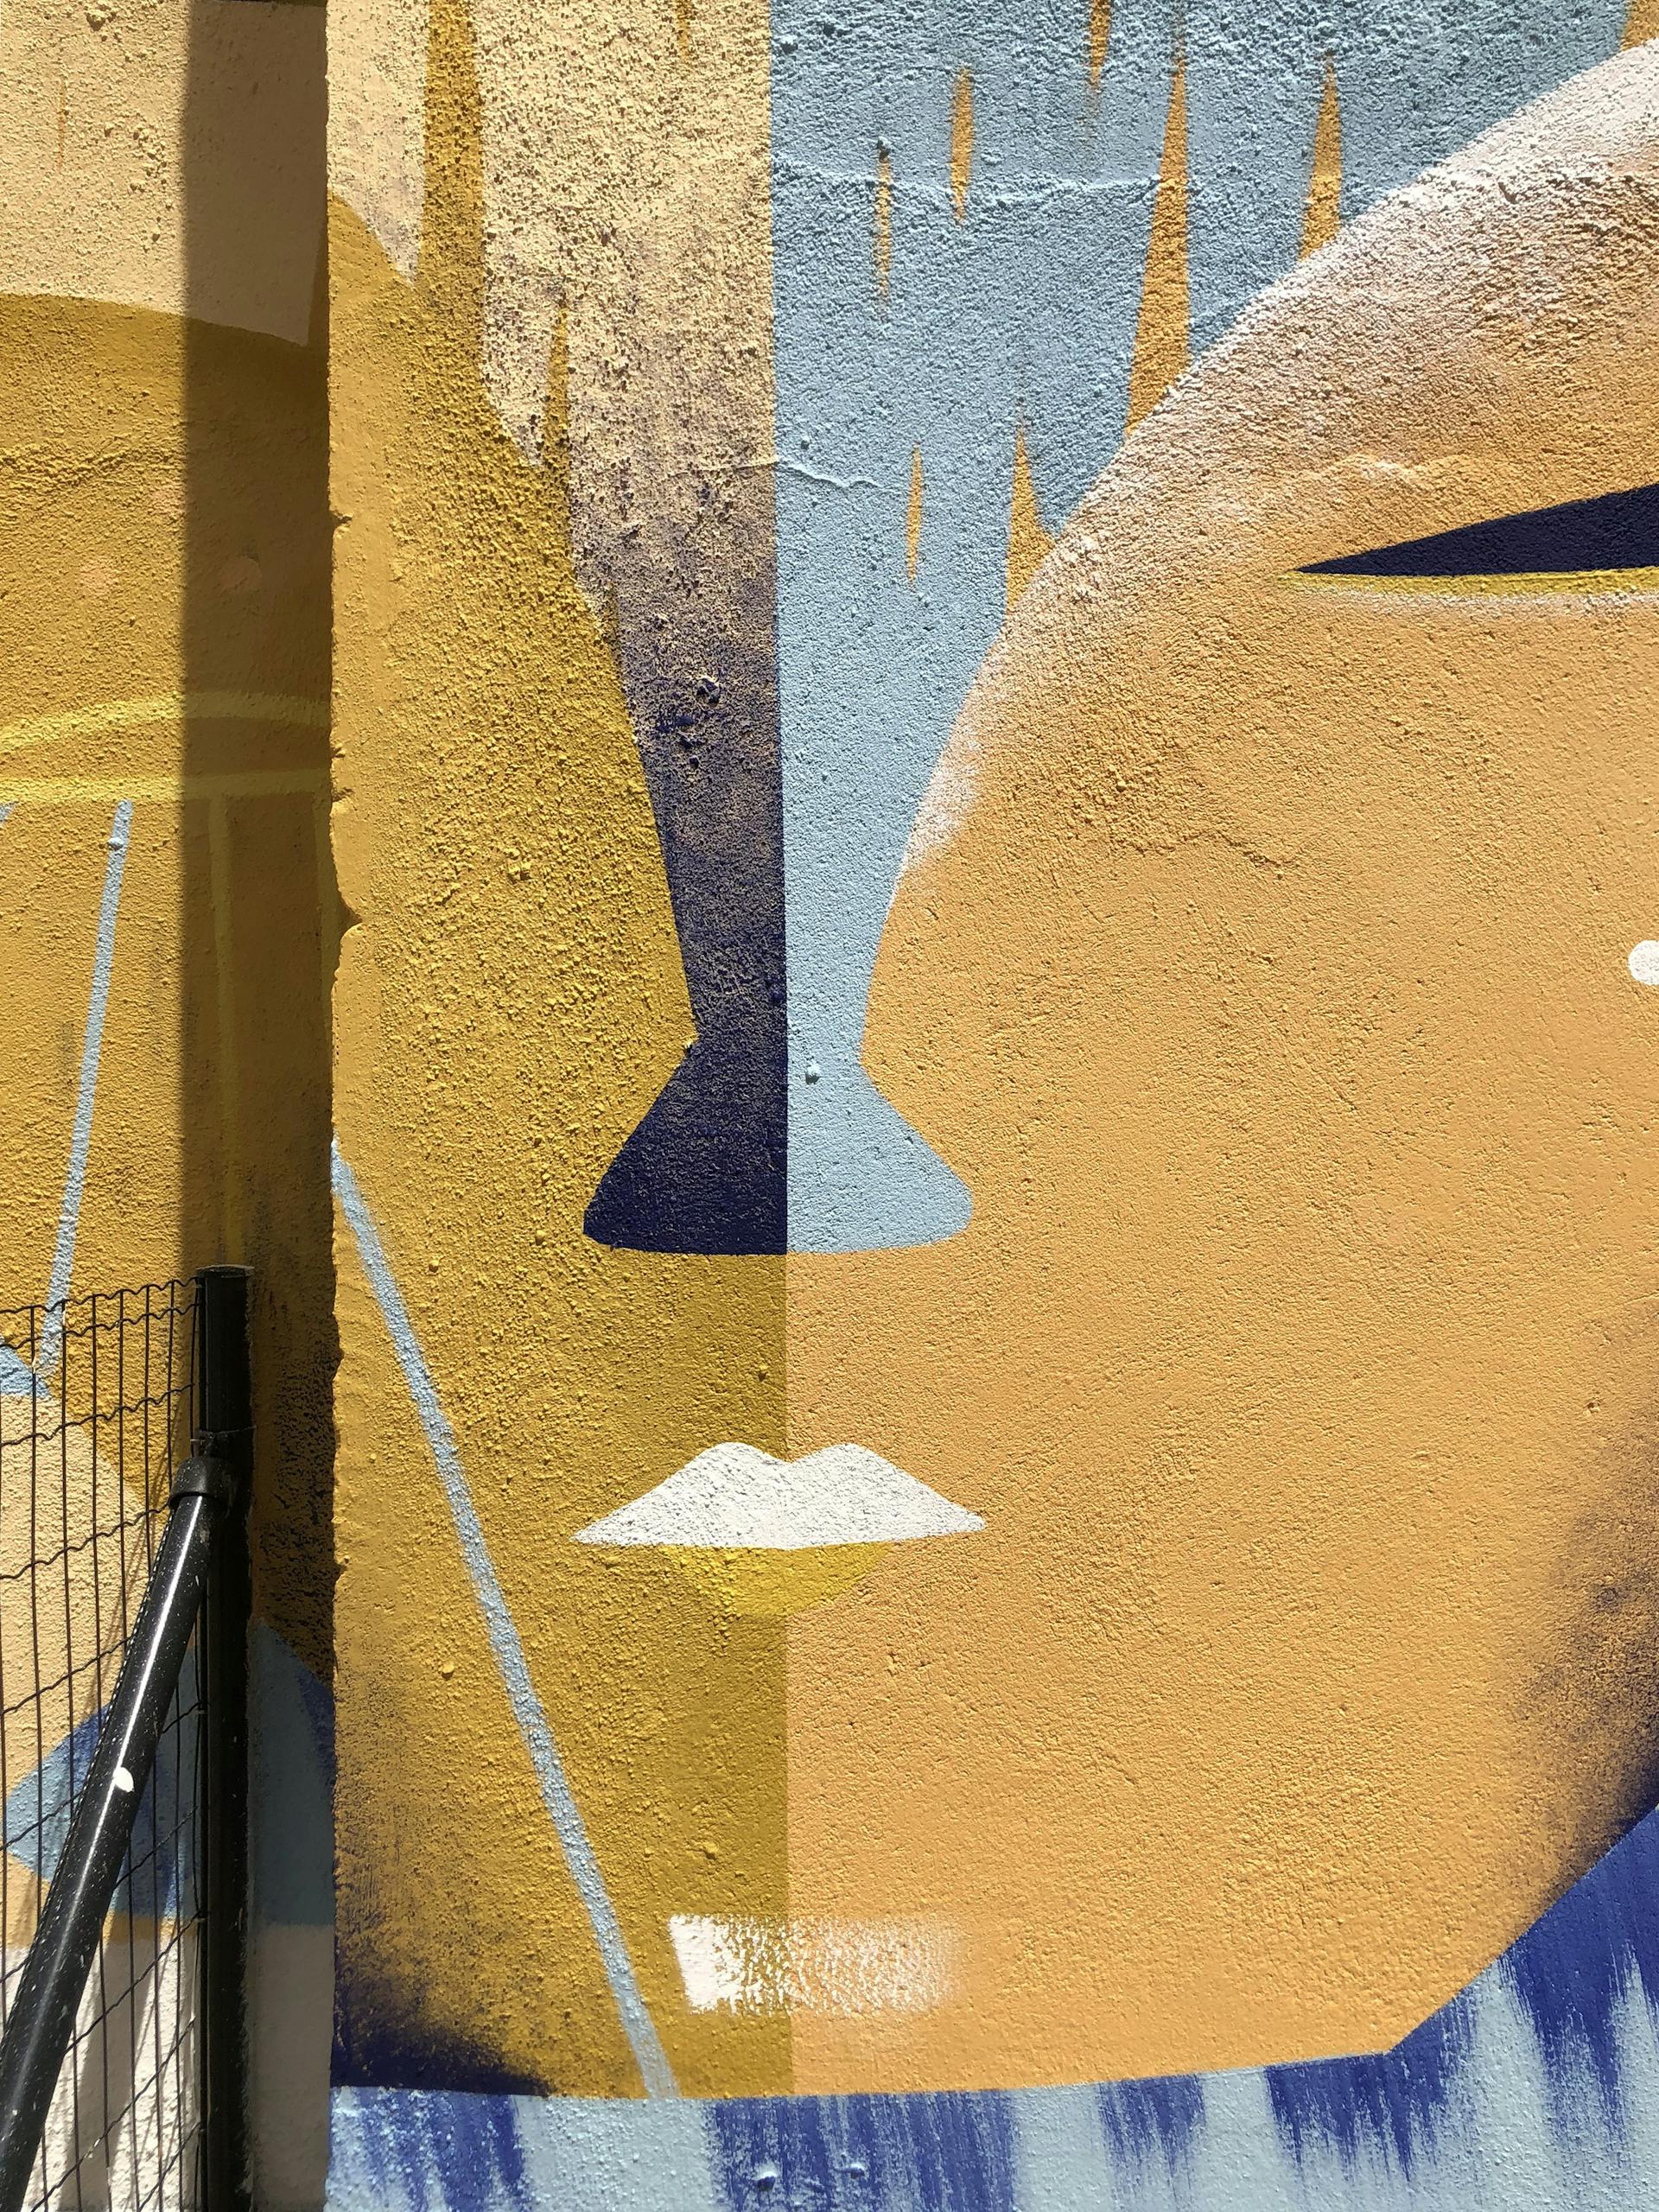 Proximité avec l'un des éléments principaux d'une œuvre street art du Studio Katra. La photo met en valeur un visage double face aux yeux mi-clos. 